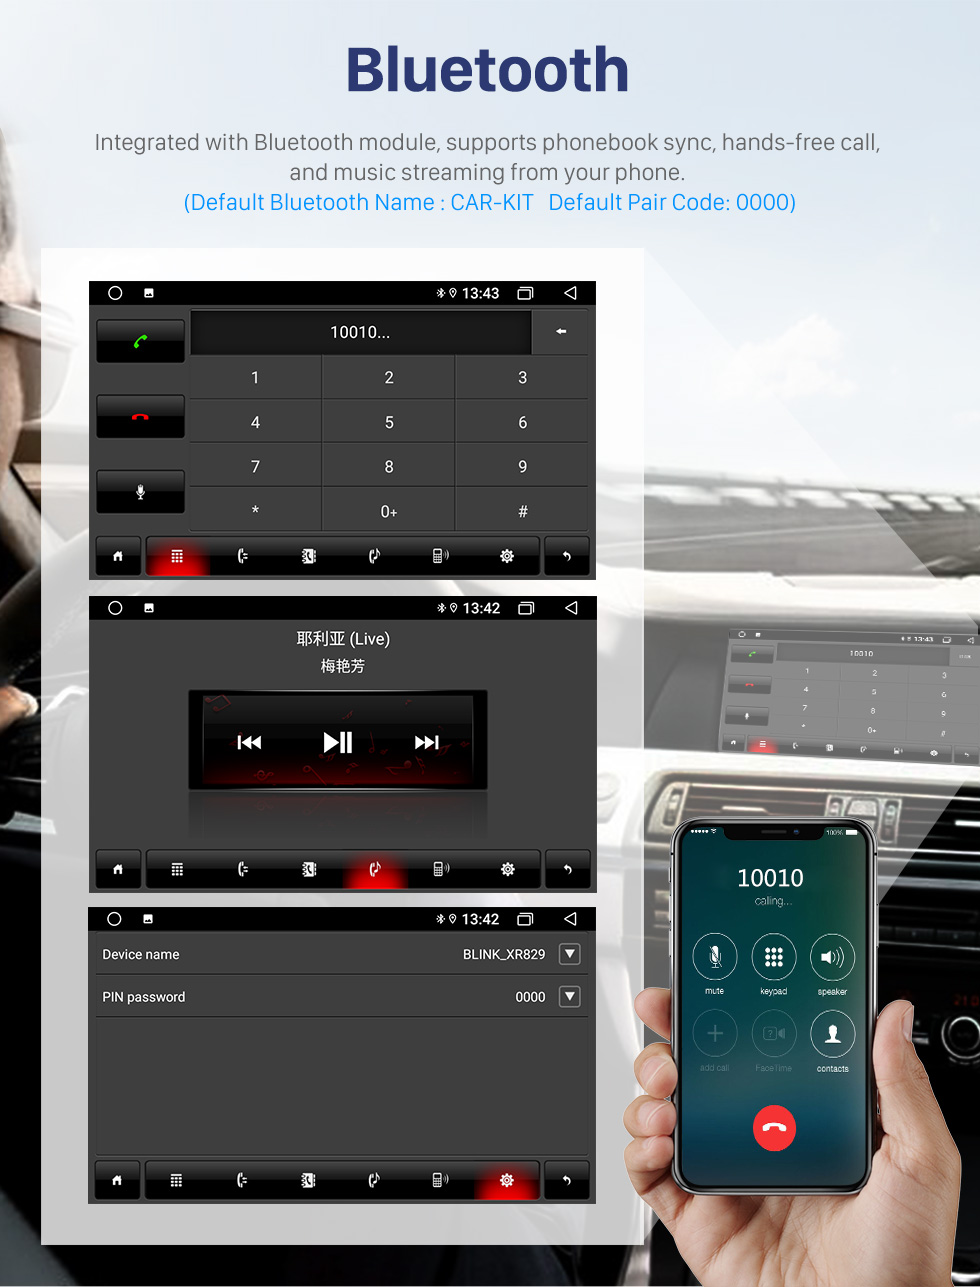 Seicane 9-дюймовый Android 10.0 для 2016 Toyota Prius Stereo GPS-навигационная система с Bluetooth OBD2 DVR HD с сенсорным экраном Камера заднего вида